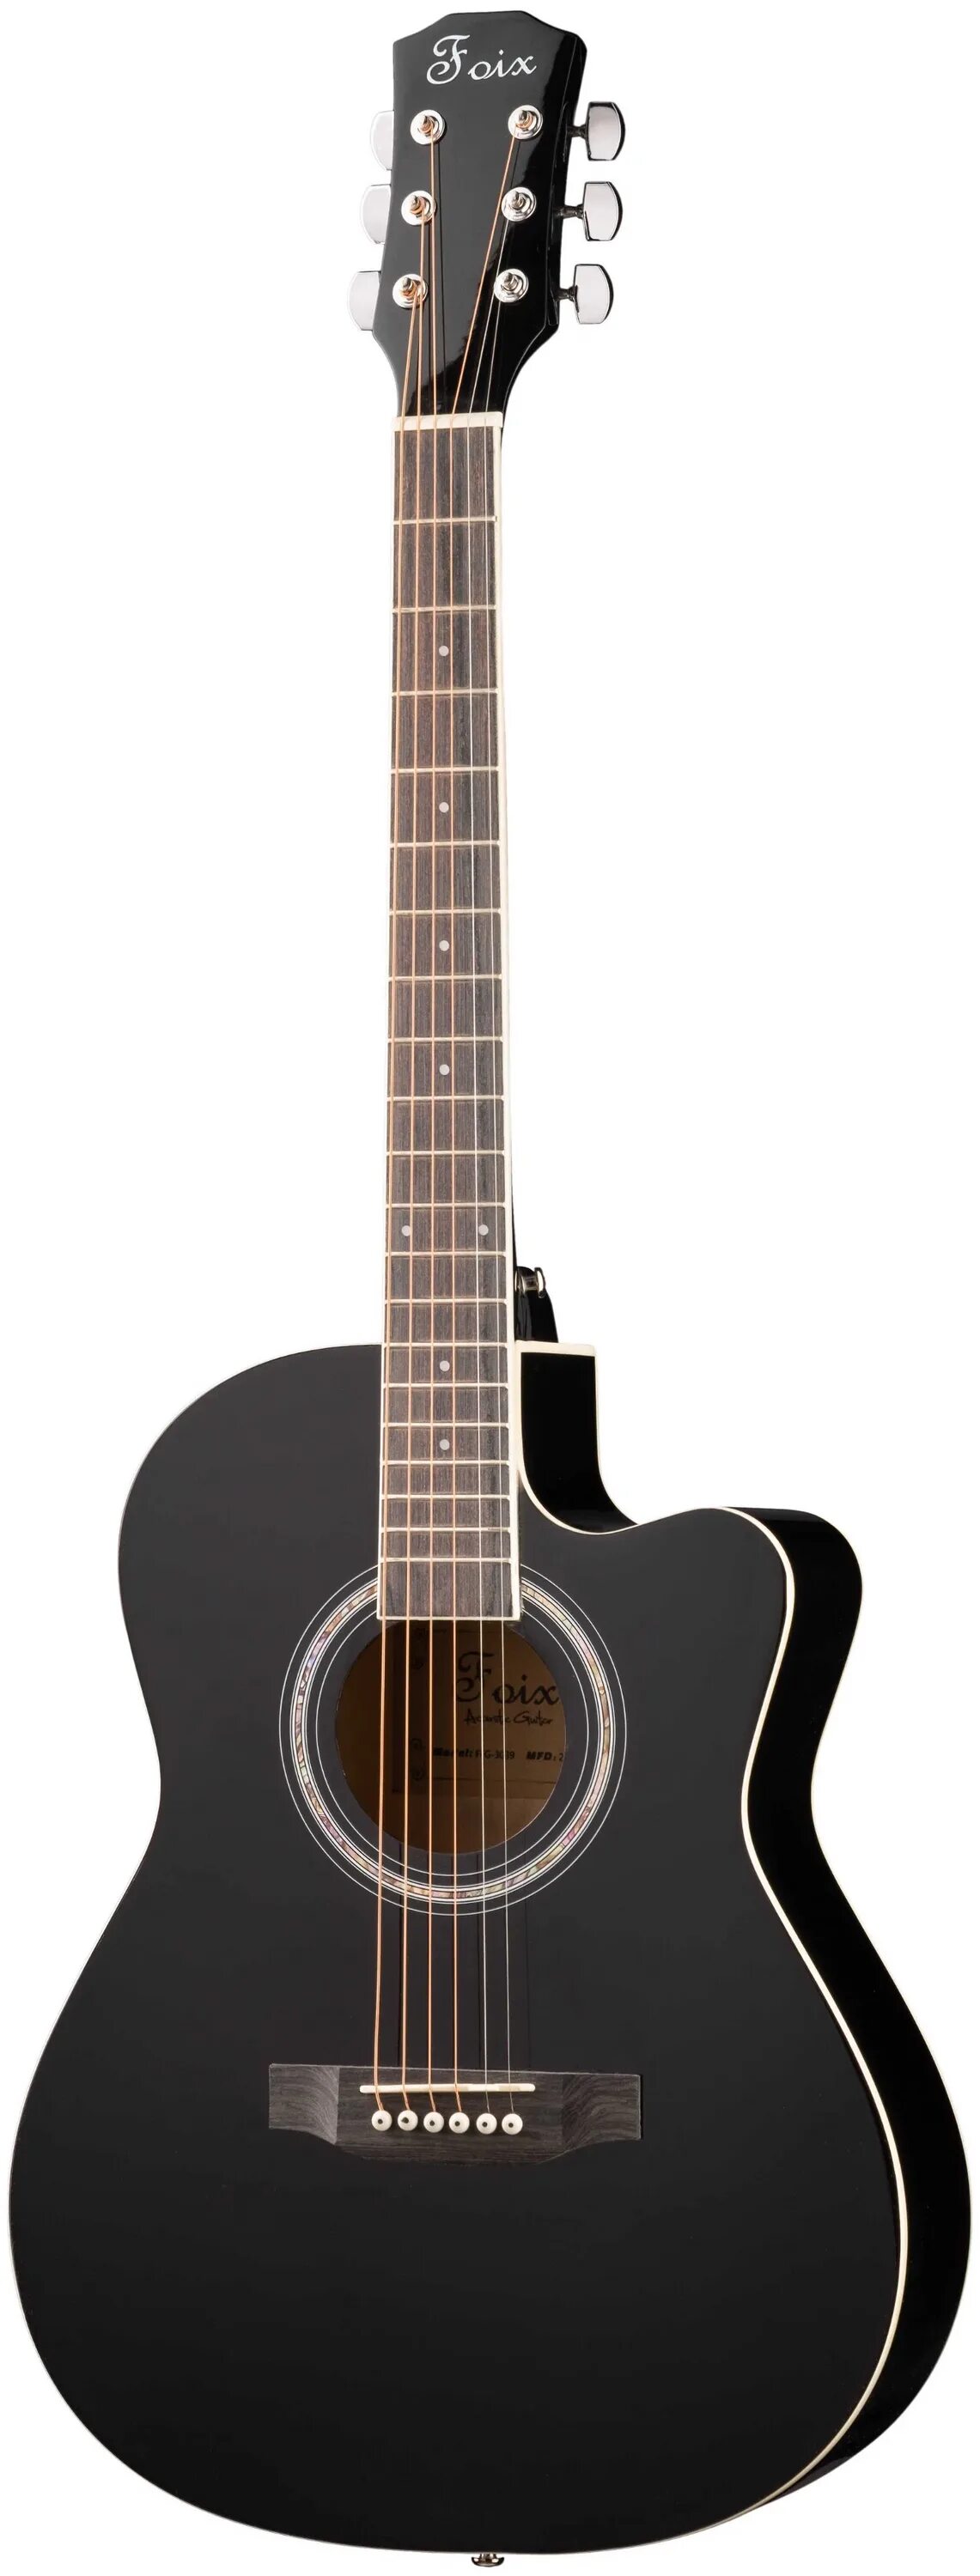 Гитара мартинес купить. Гитара Foix FFG-3039 акустическая. Гитара Мартинез w91c. Гитара Martinez w-91c. Martinez w-91c BK.